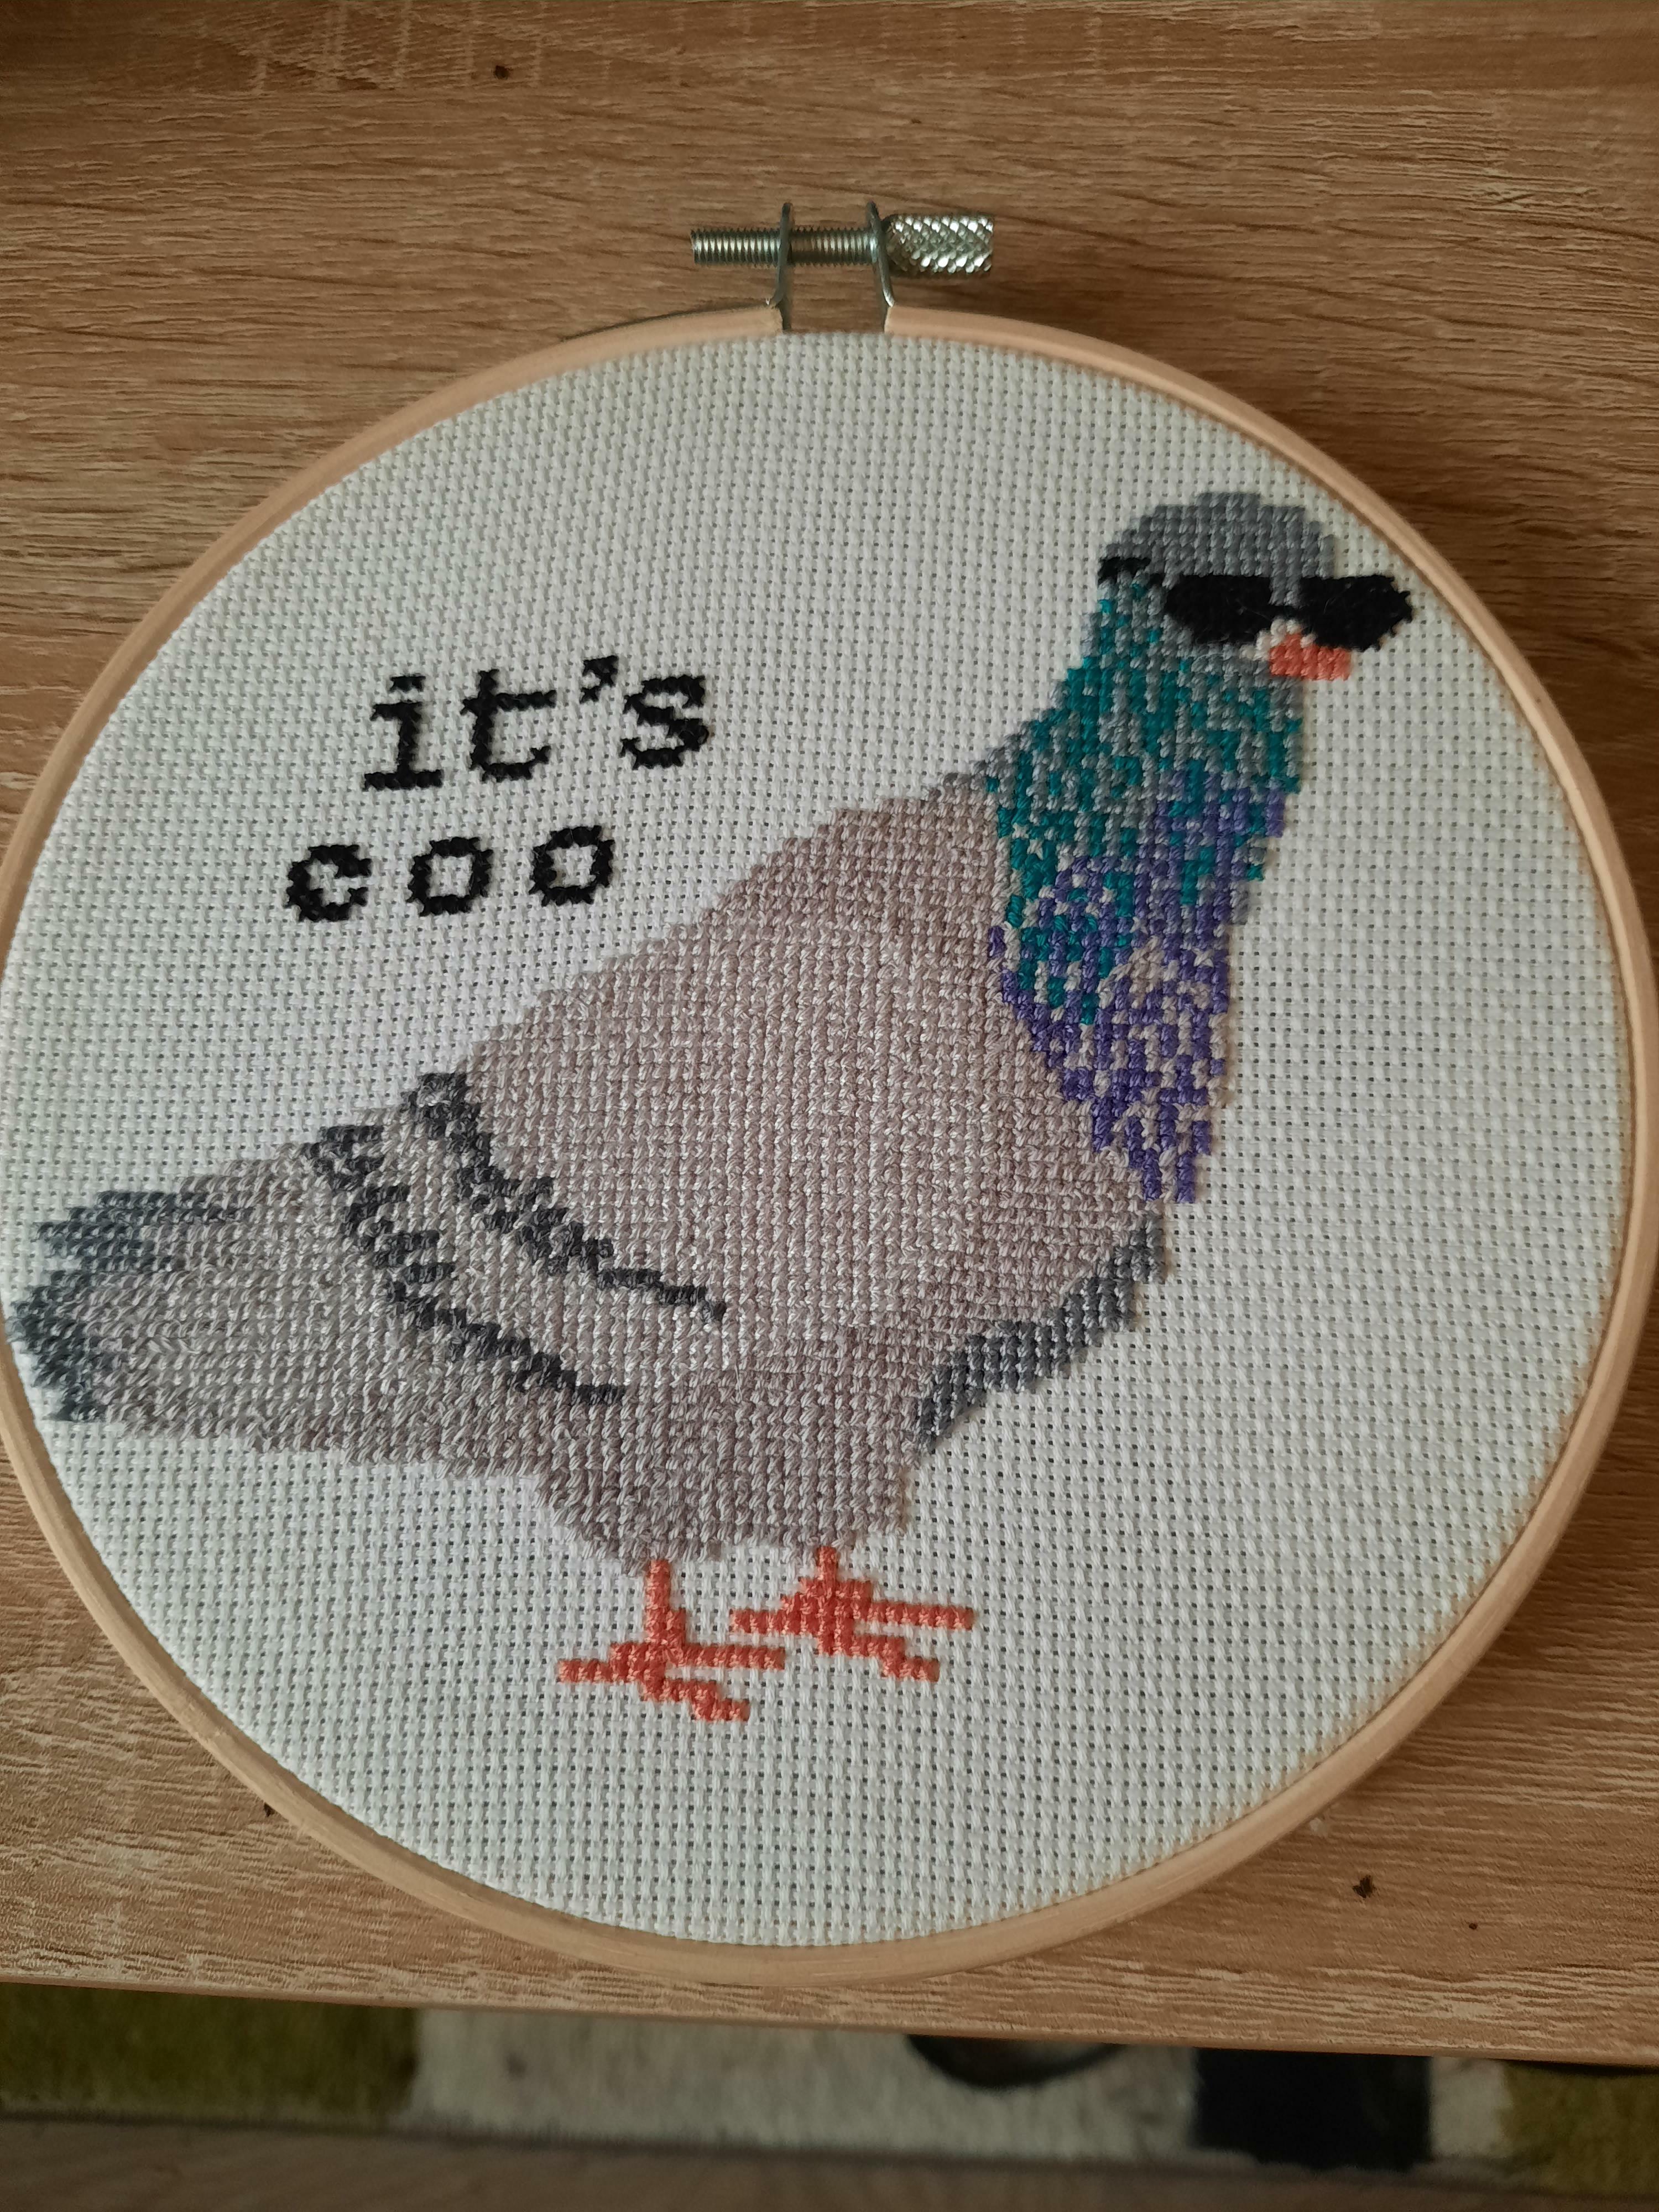 Fait pour mon amie obsédée par les pigeons, tu crois qu'elle aimera ?